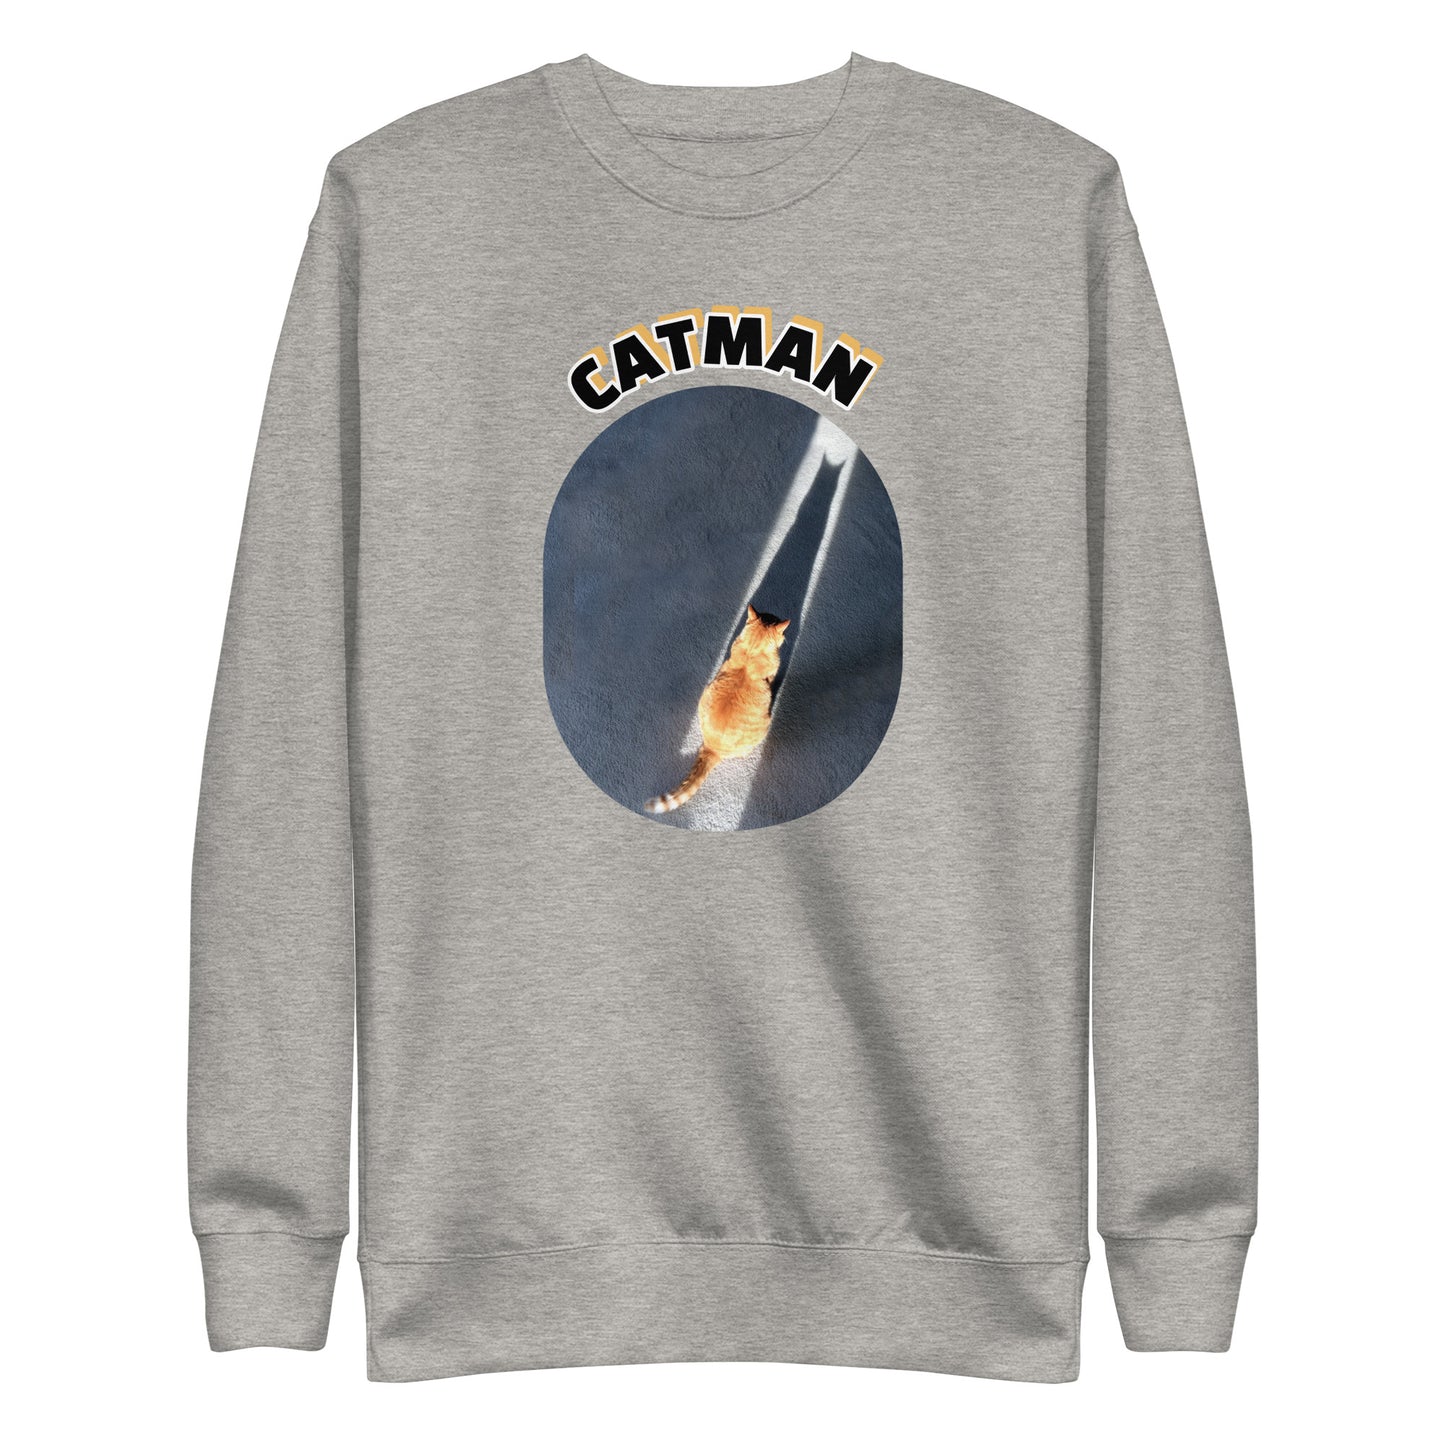 The Catman Premium Sweatshirt